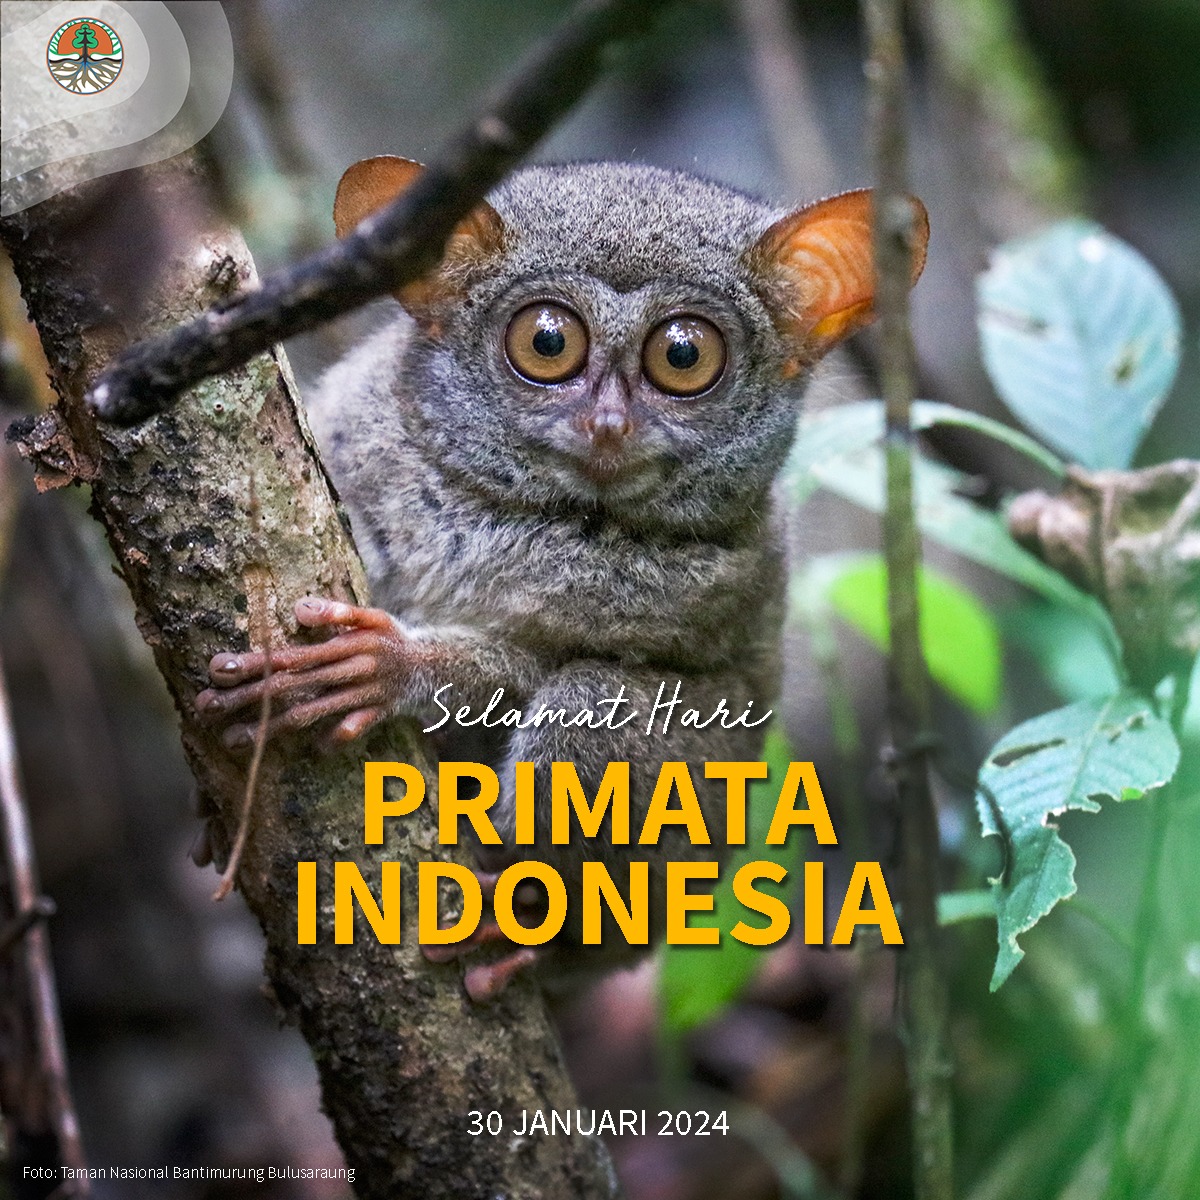 Halo #SobatHijau, Indonesia memiliki 37 jenis primata yang dilindungi. Mereka terdiri dari 16 jenis dari famili Cercopithecidae, 3 dr Hominidae, 7 dr Hylobatidae, 3 dr Lorisidae, & 8 dr Tarsiidae. 

Apakah kalian bisa menyebut 5 jenis satwa yang termasuk #primata Sob?

#KLHK